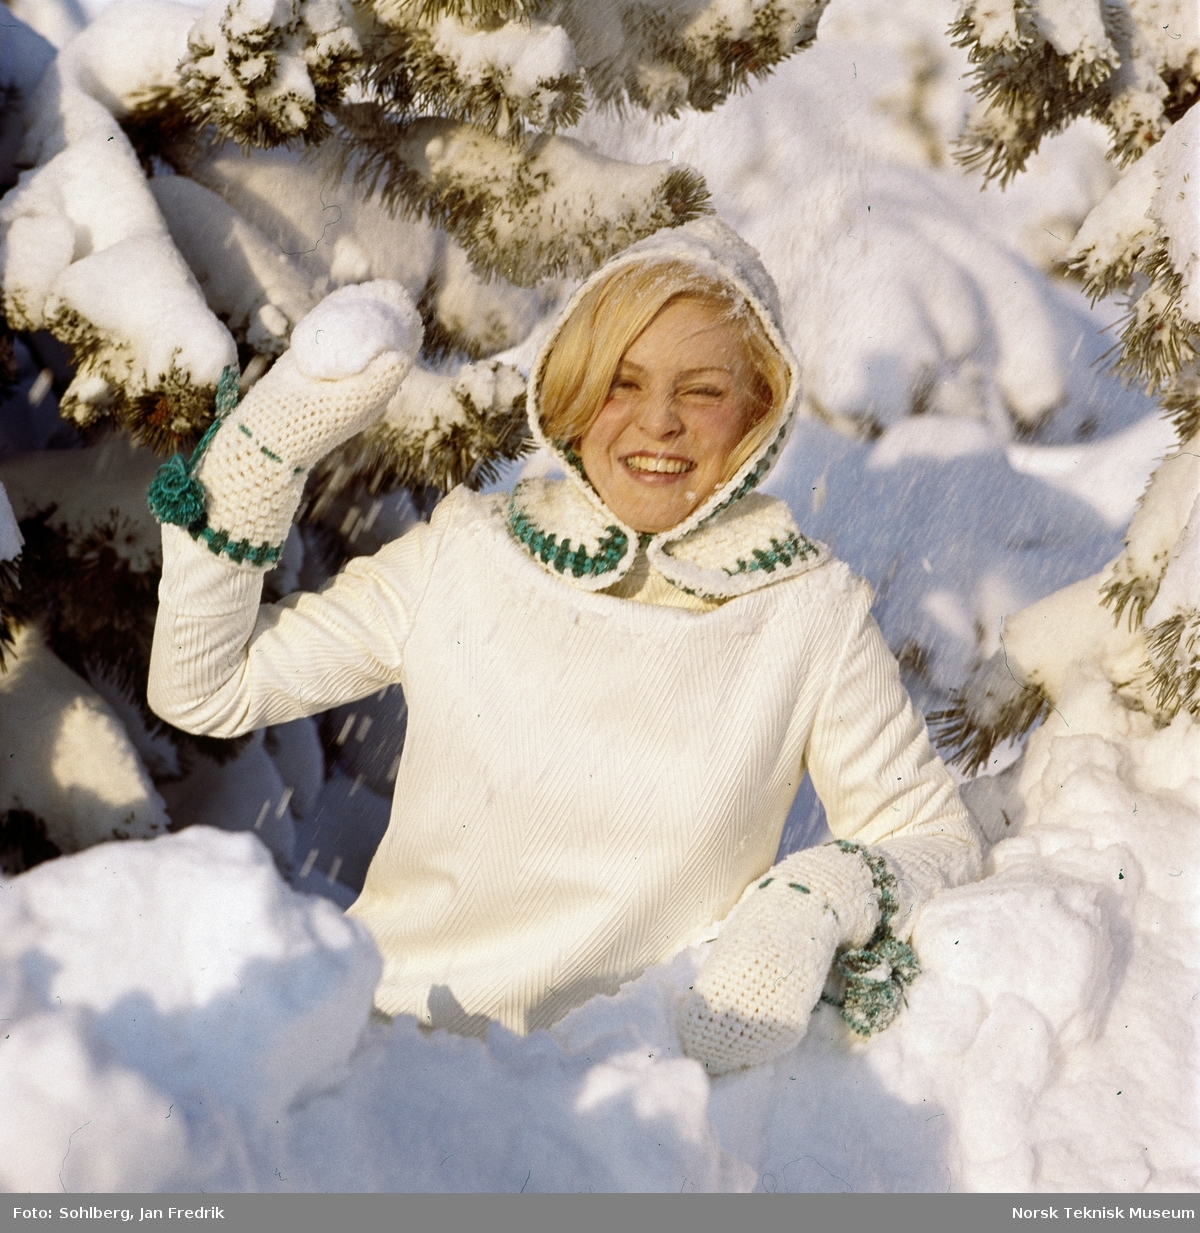 Kvinnelig modell viser vintermote. Hun har hvit genser, hvit strikket hette med grønt mønster og hvite votter med grønne snorer.